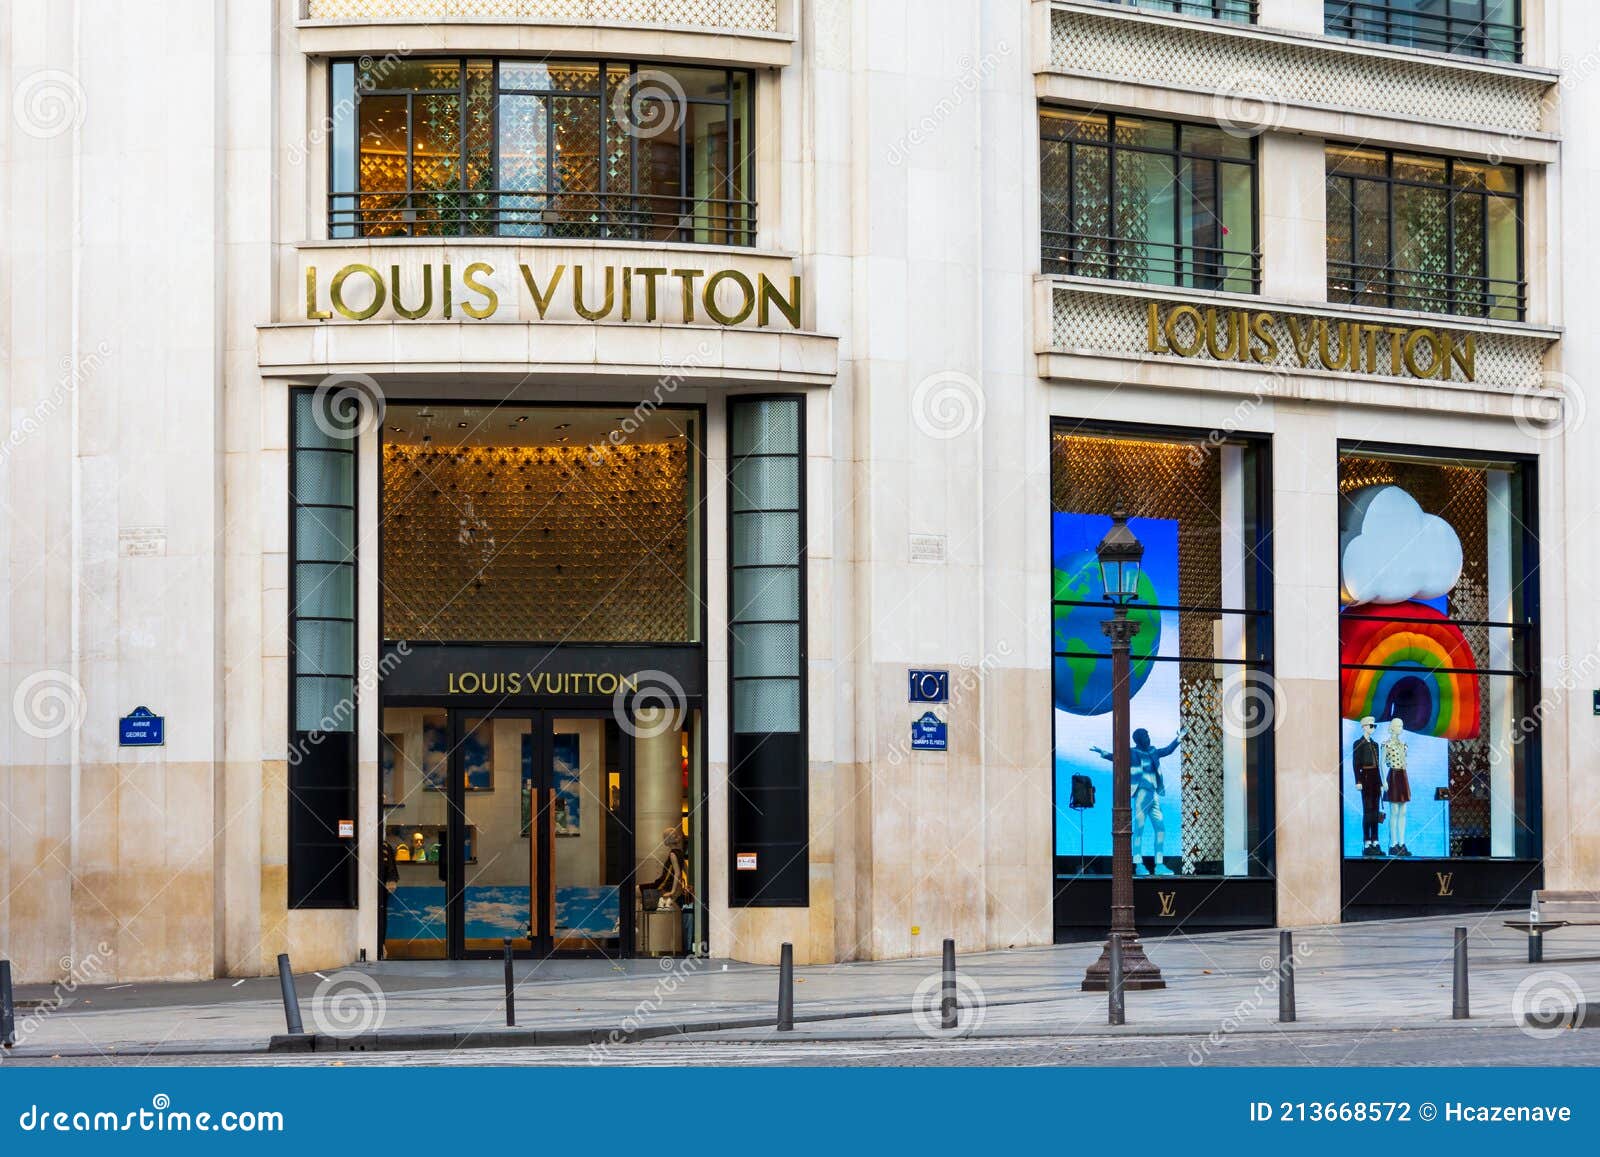 Louis Vuitton Building on the Avenue Des Champs-ElysÃ©es, Paris, France  Editorial Photography - Image of architecture, famous: 213668572